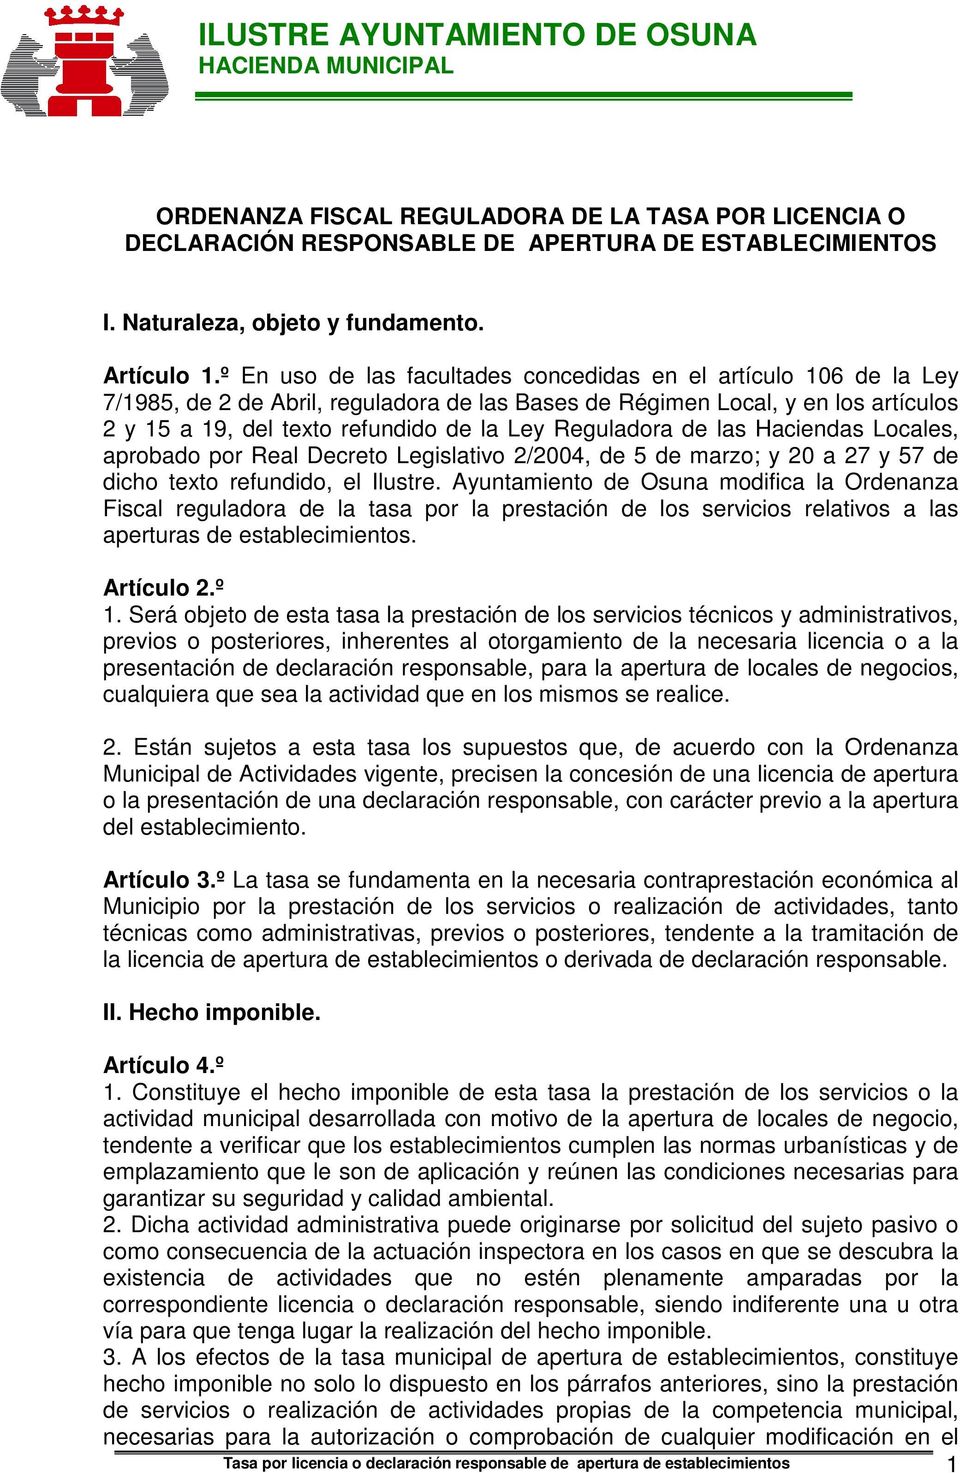 Reguladora de las Haciendas Locales, aprobado por Real Decreto Legislativo 2/2004, de 5 de marzo; y 20 a 27 y 57 de dicho texto refundido, el Ilustre.